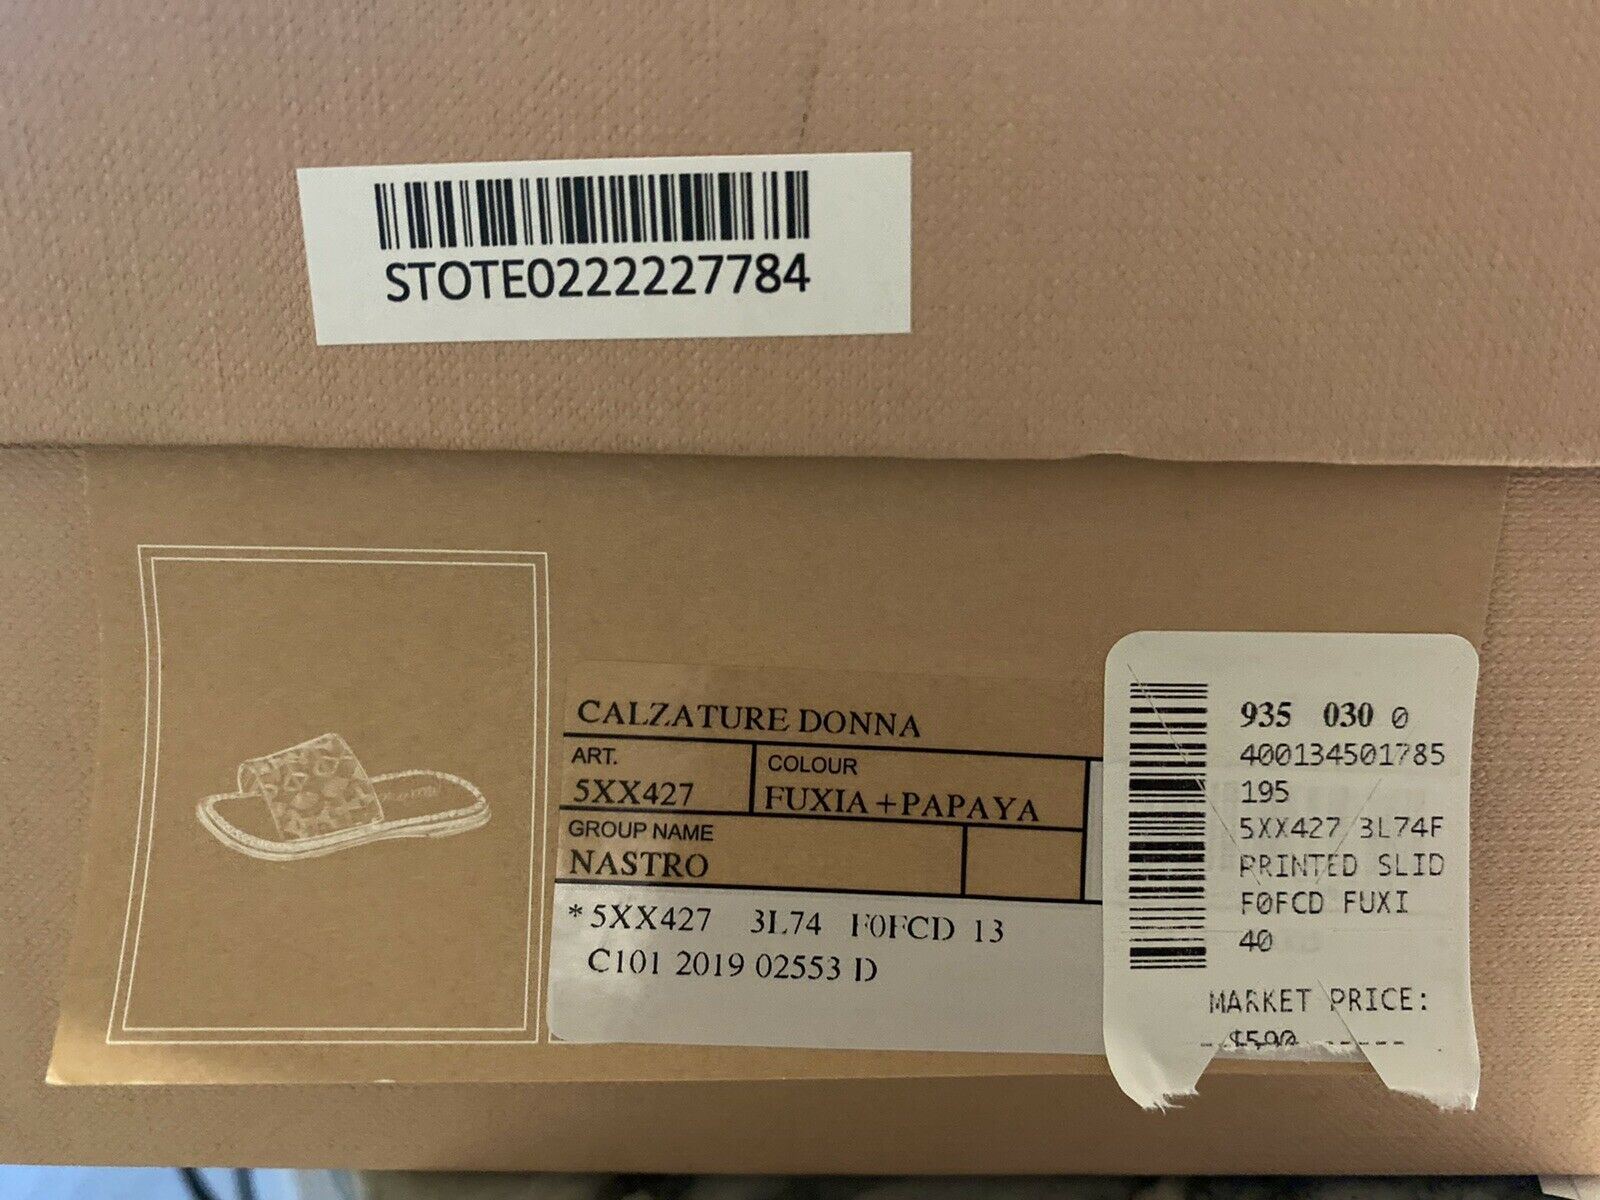 NIB 590 долларов США Женские розовые сандалии PRADA Miu Miu 10 США (40 евро) Италия 